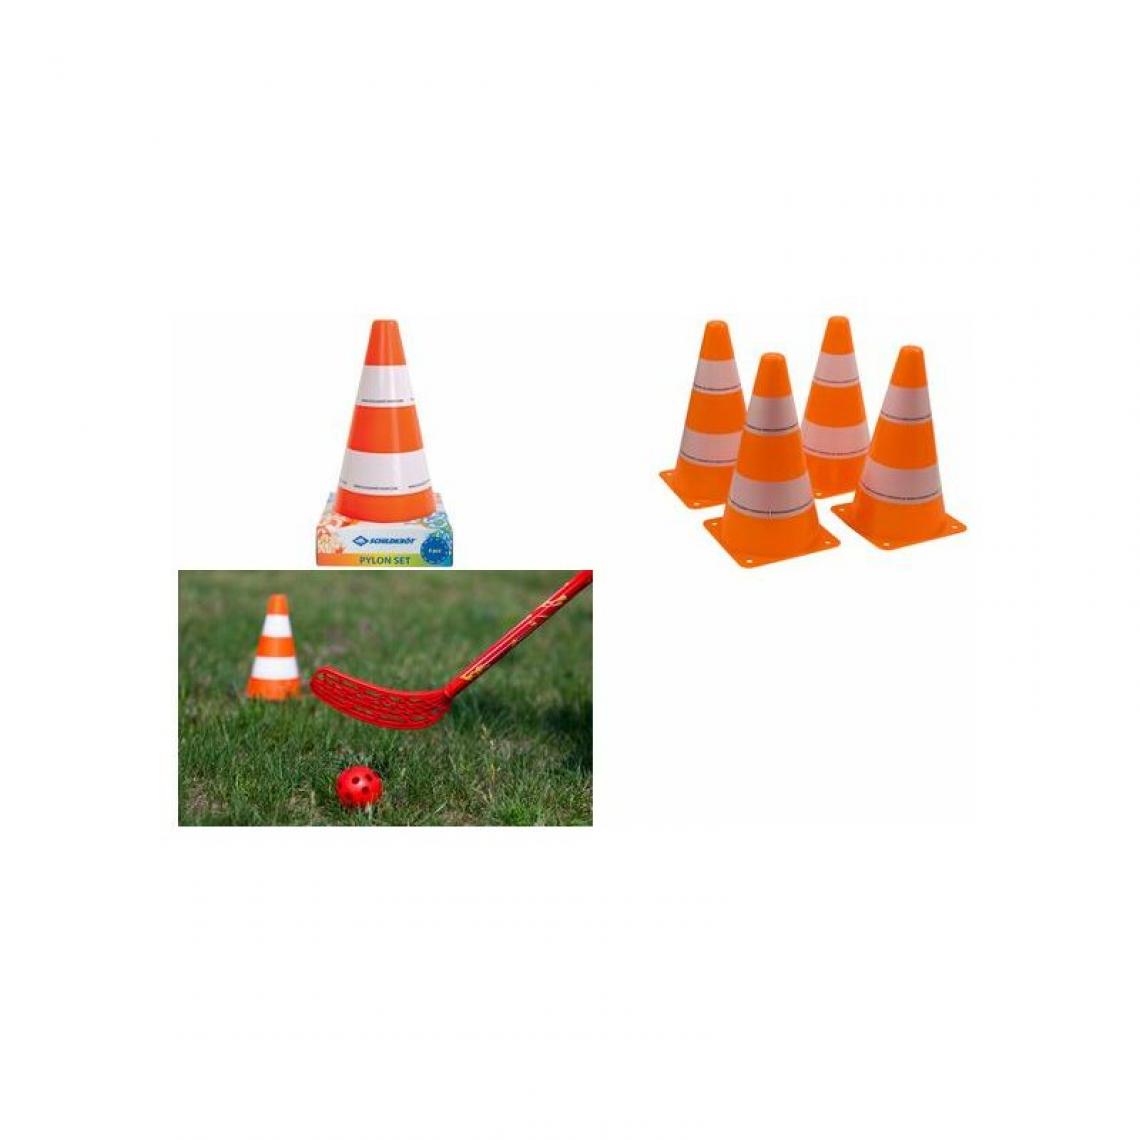 Schilder Fun Sport - SCHILDKRÖT Cônes de signalisation, set de 4, orange / blanc () - Jeux de balles